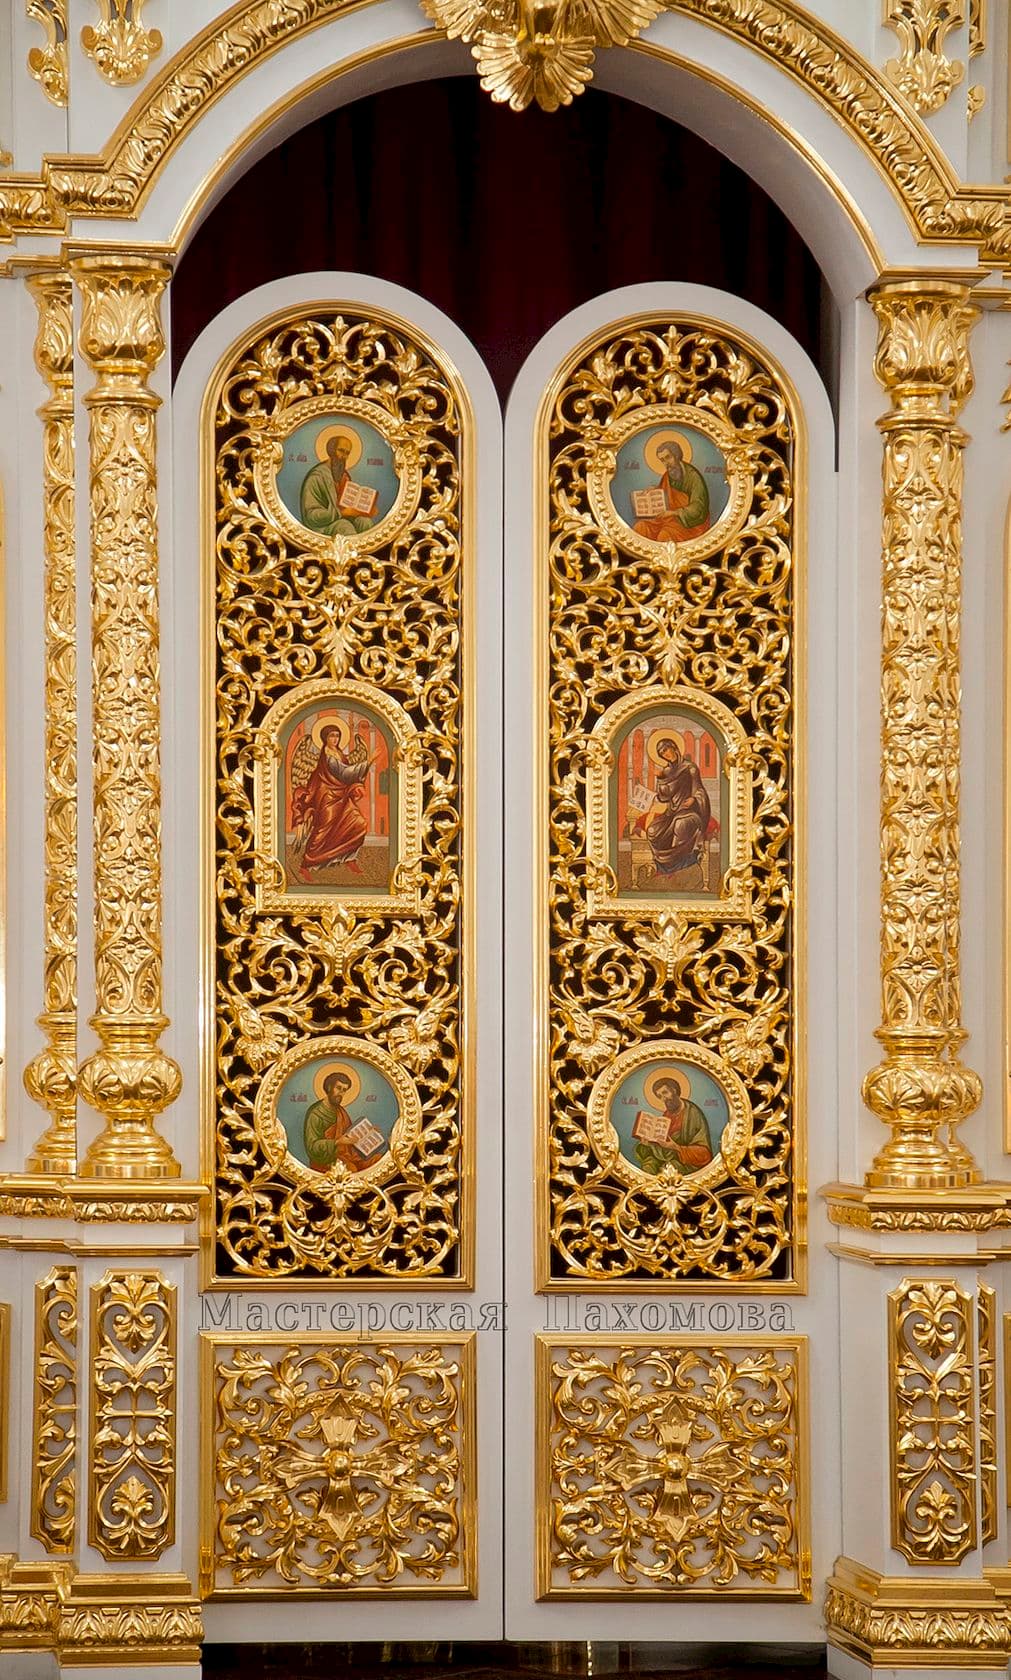 Иконостас в храме Сергия Радонежского. Резьба по дереву, позолота